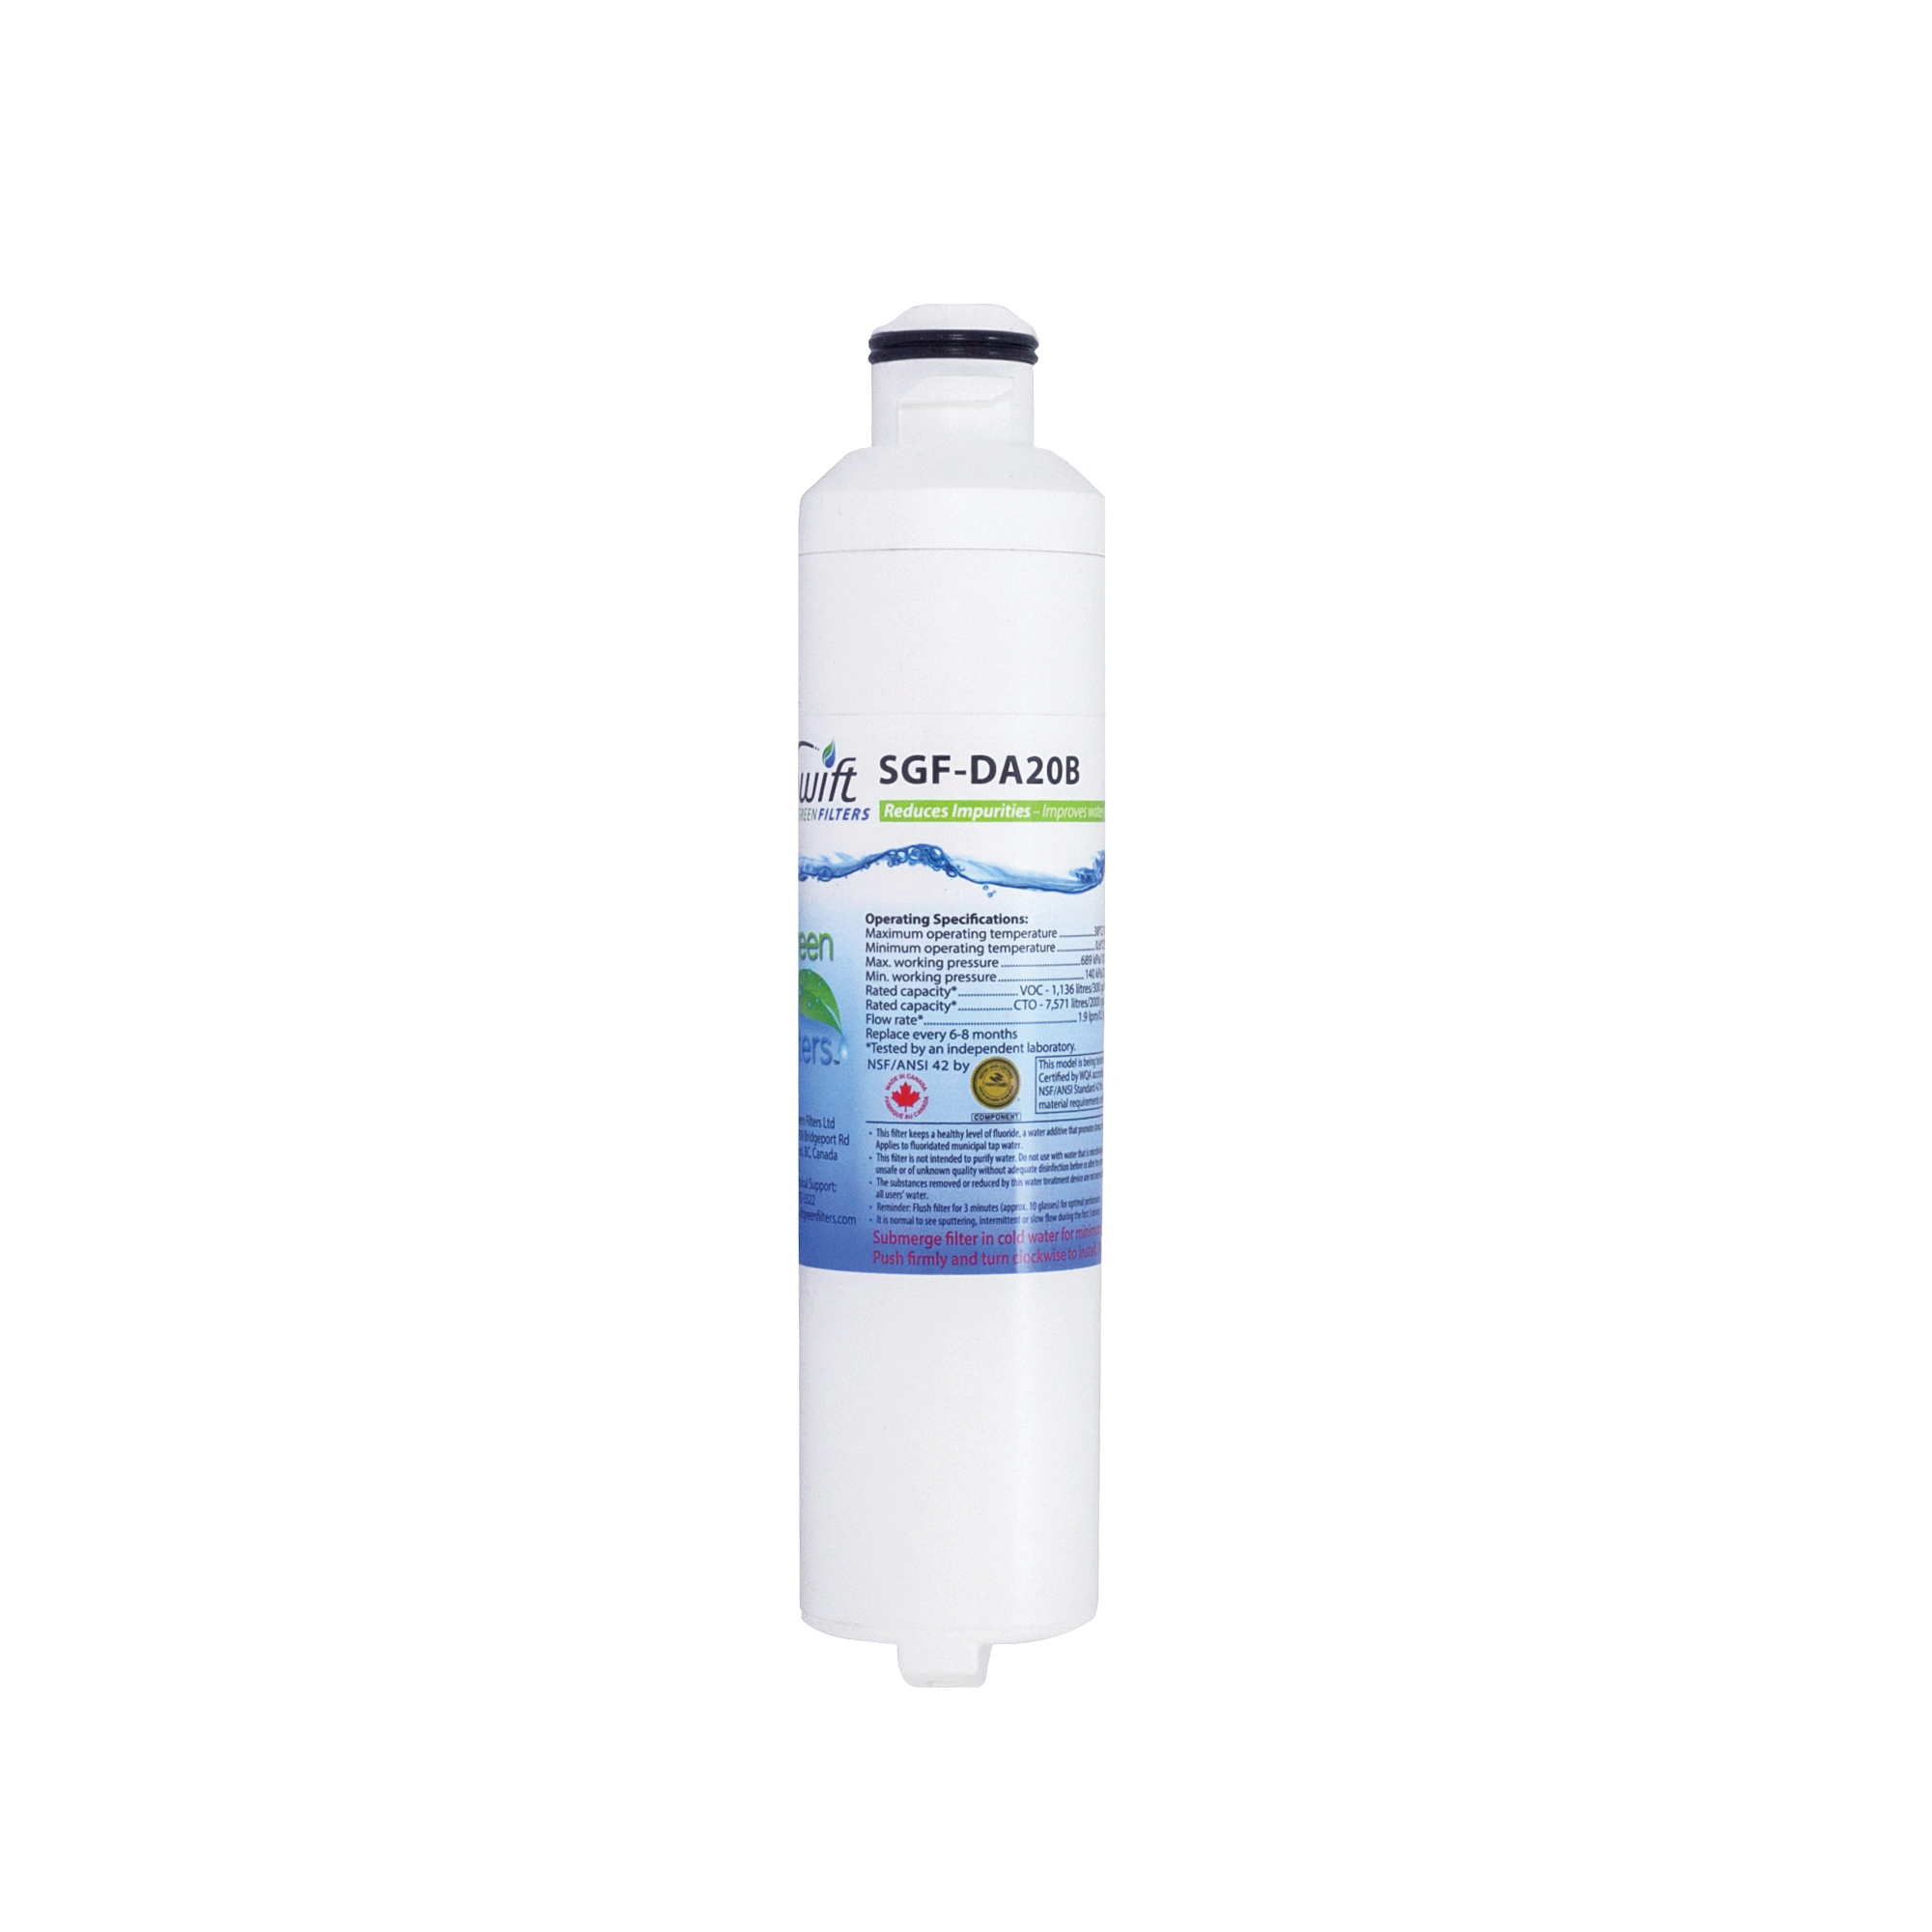 SGF-DA20B Refrigerator Water Filter, 0.5 gpm, 0.5 um Filter, Coconut Shell Carbon Block Filter Media